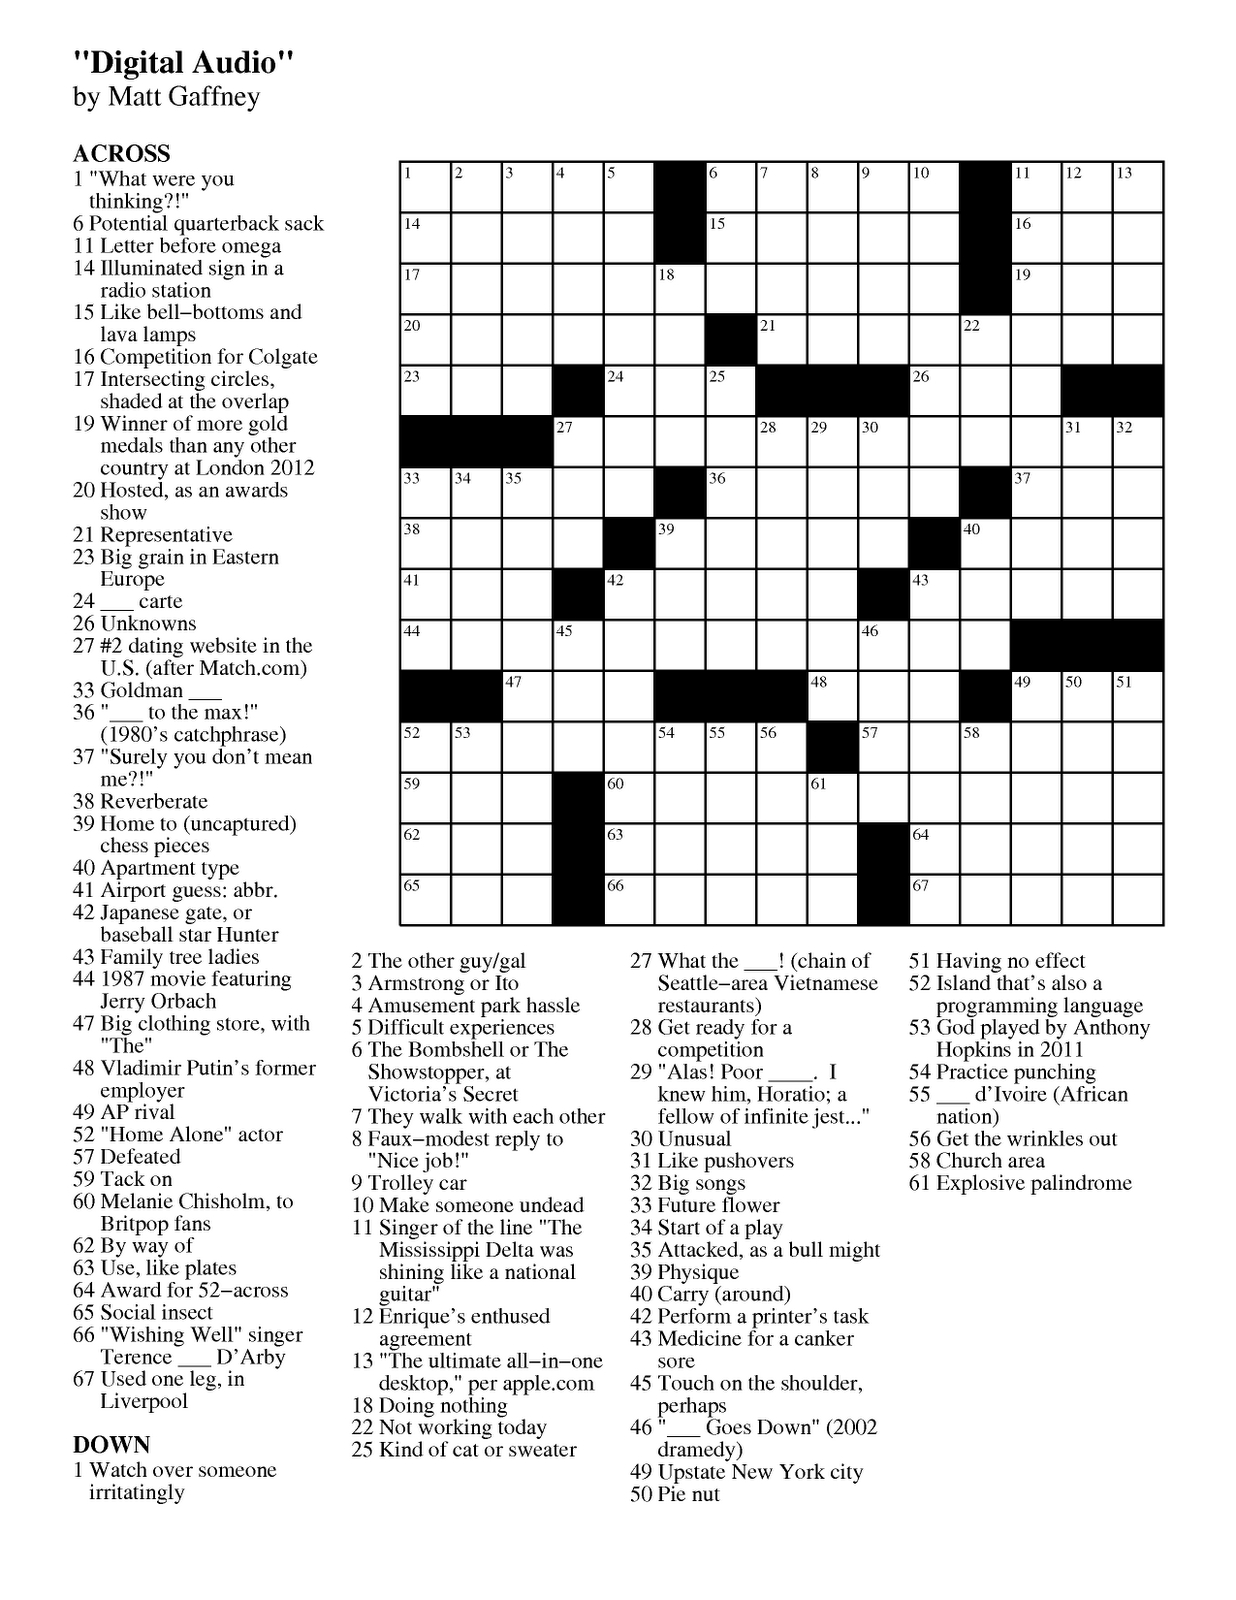 Hatchet Crossword Puzzle Printable